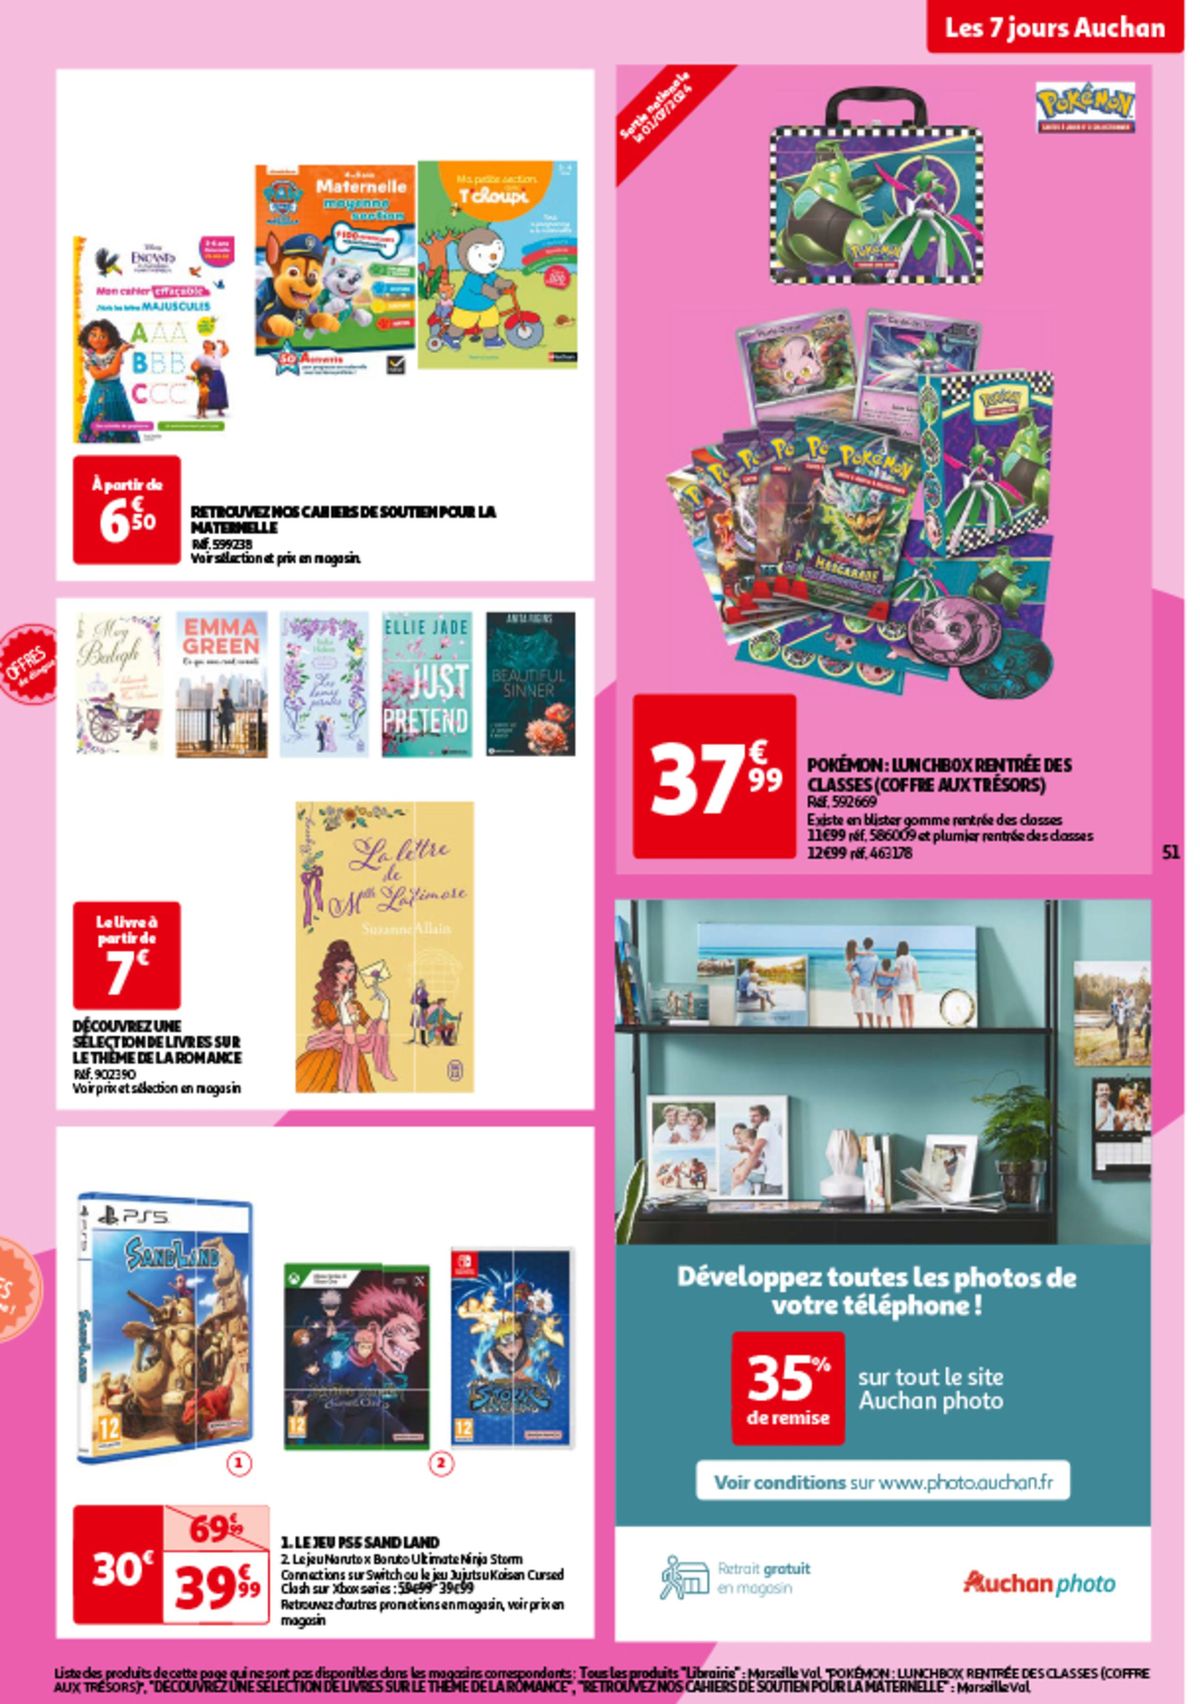 Catalogue Les 7 jours Auchan, c'est maintenant !, page 00051